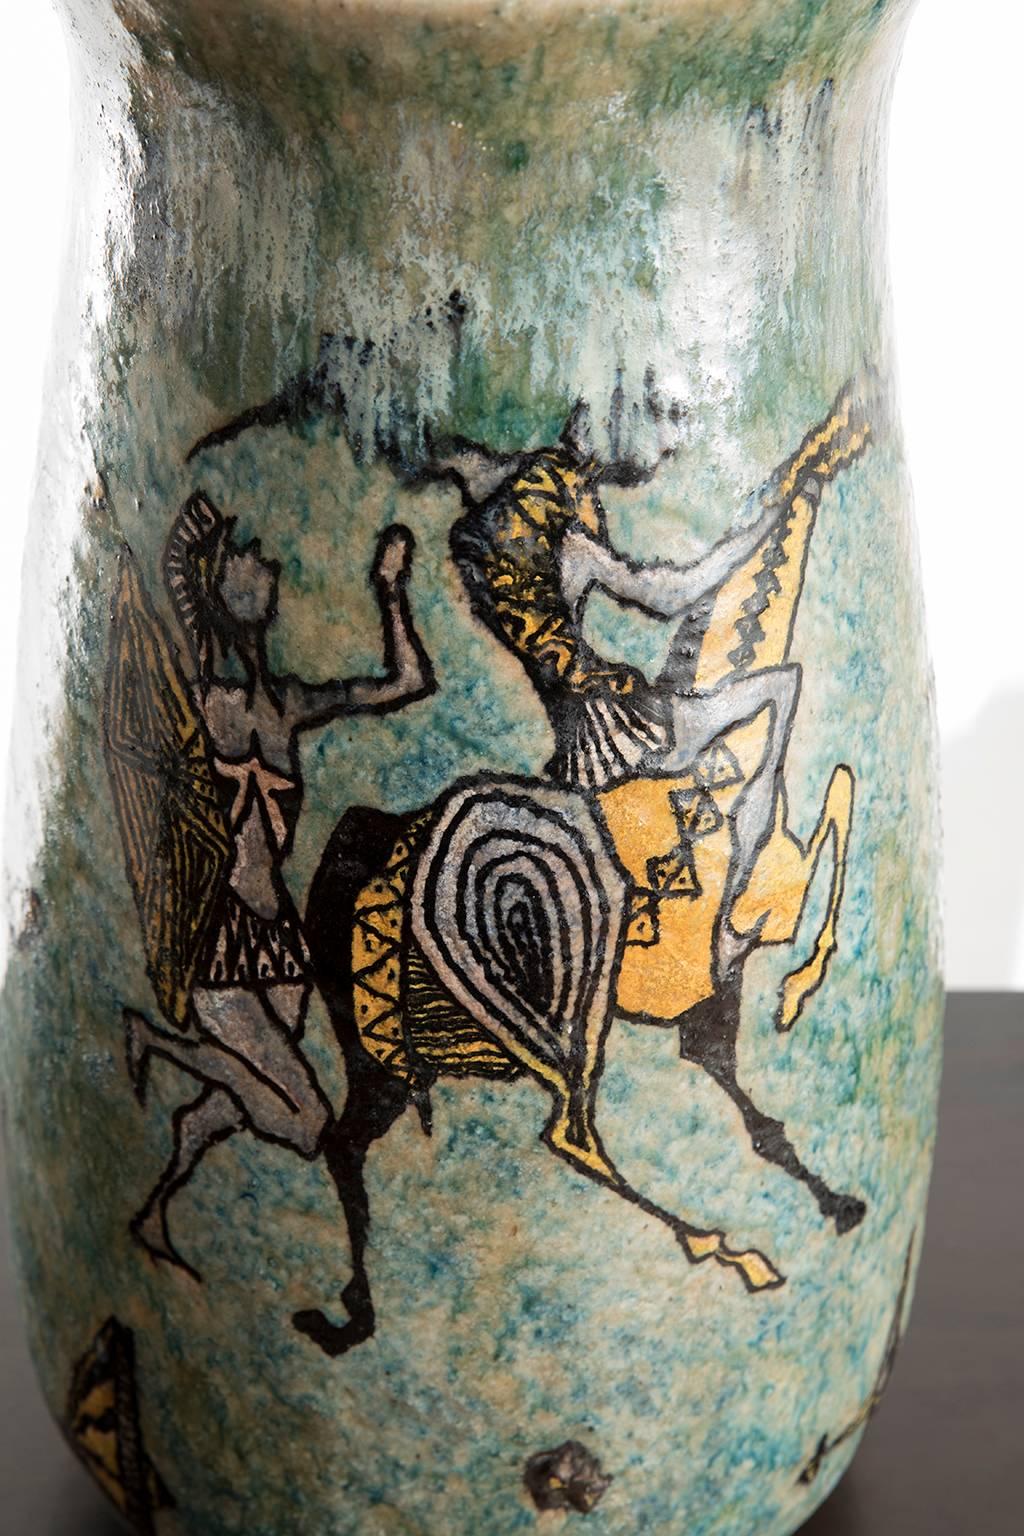 Carlo Zauli Midcentury Mythological Turquoise Glazed Ceramic Italian Vase, 1950s For Sale 2